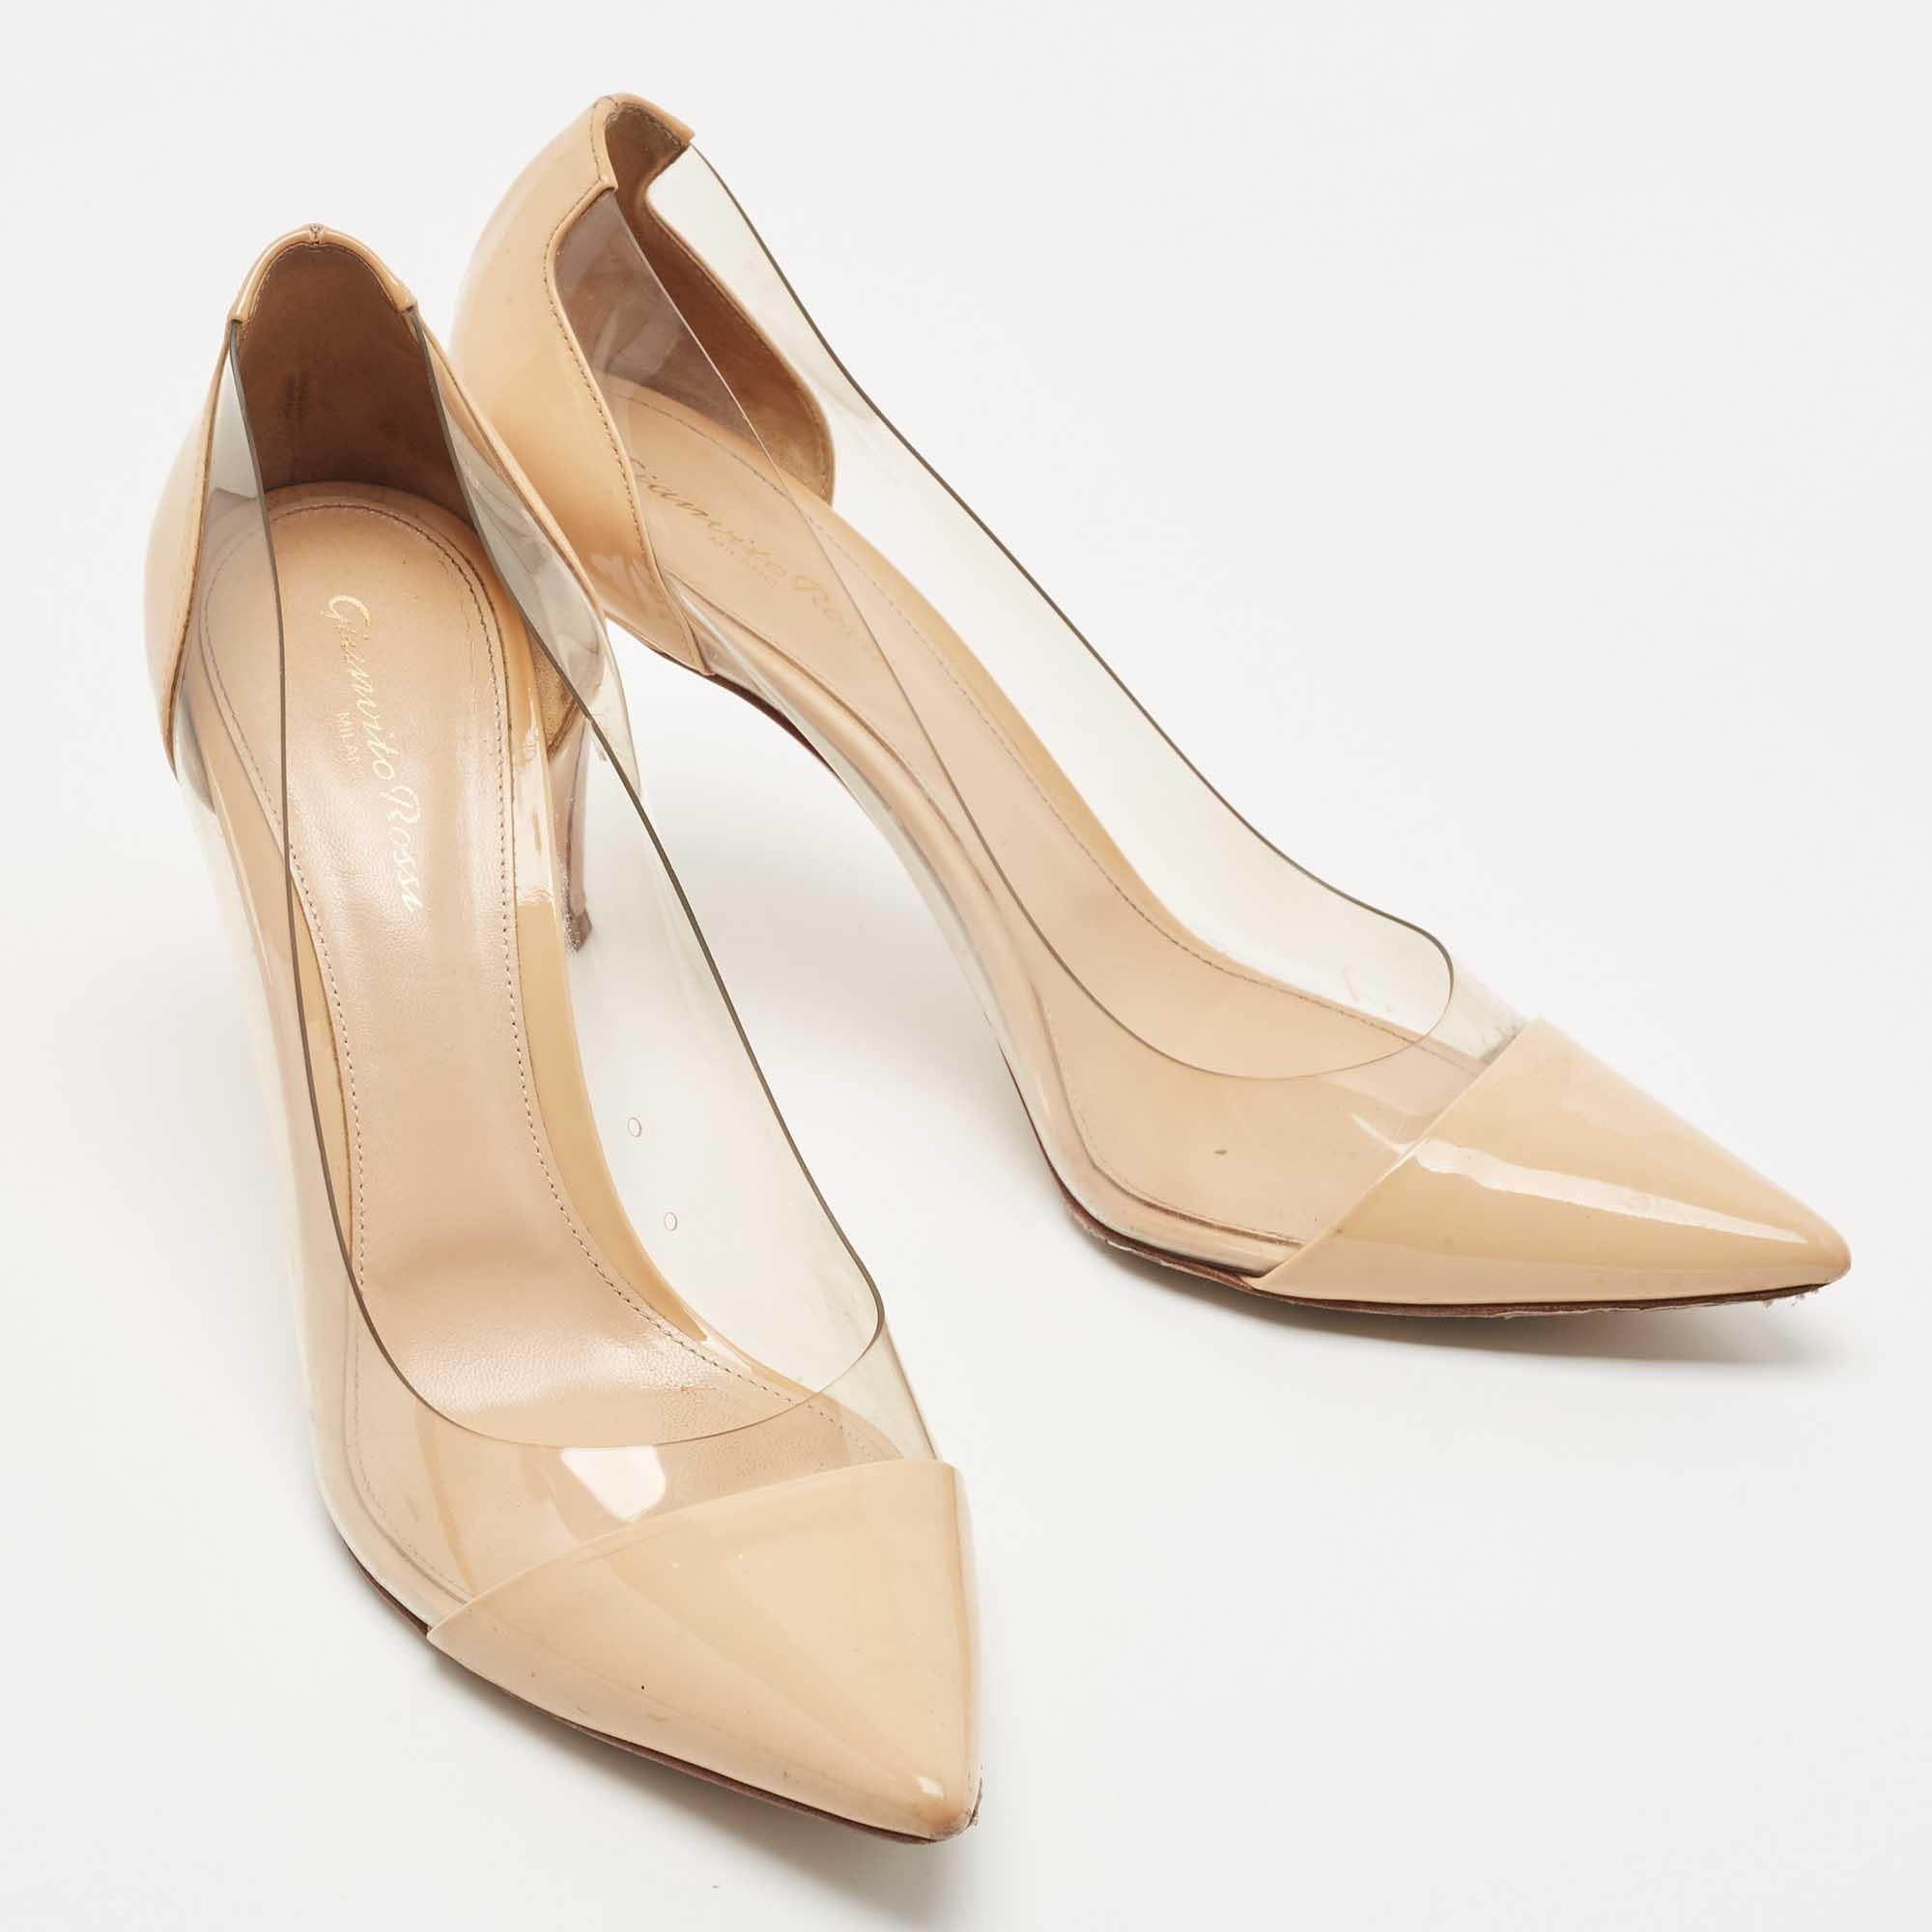 L'esthétique intemporelle de Gianvito Rossi et son savoir-faire artisanal en matière de fabrication de chaussures sont évidents dans ces superbes escarpins Plexi. Confectionnées en cuir verni beige sur les orteils pointus et le talon, elles sont